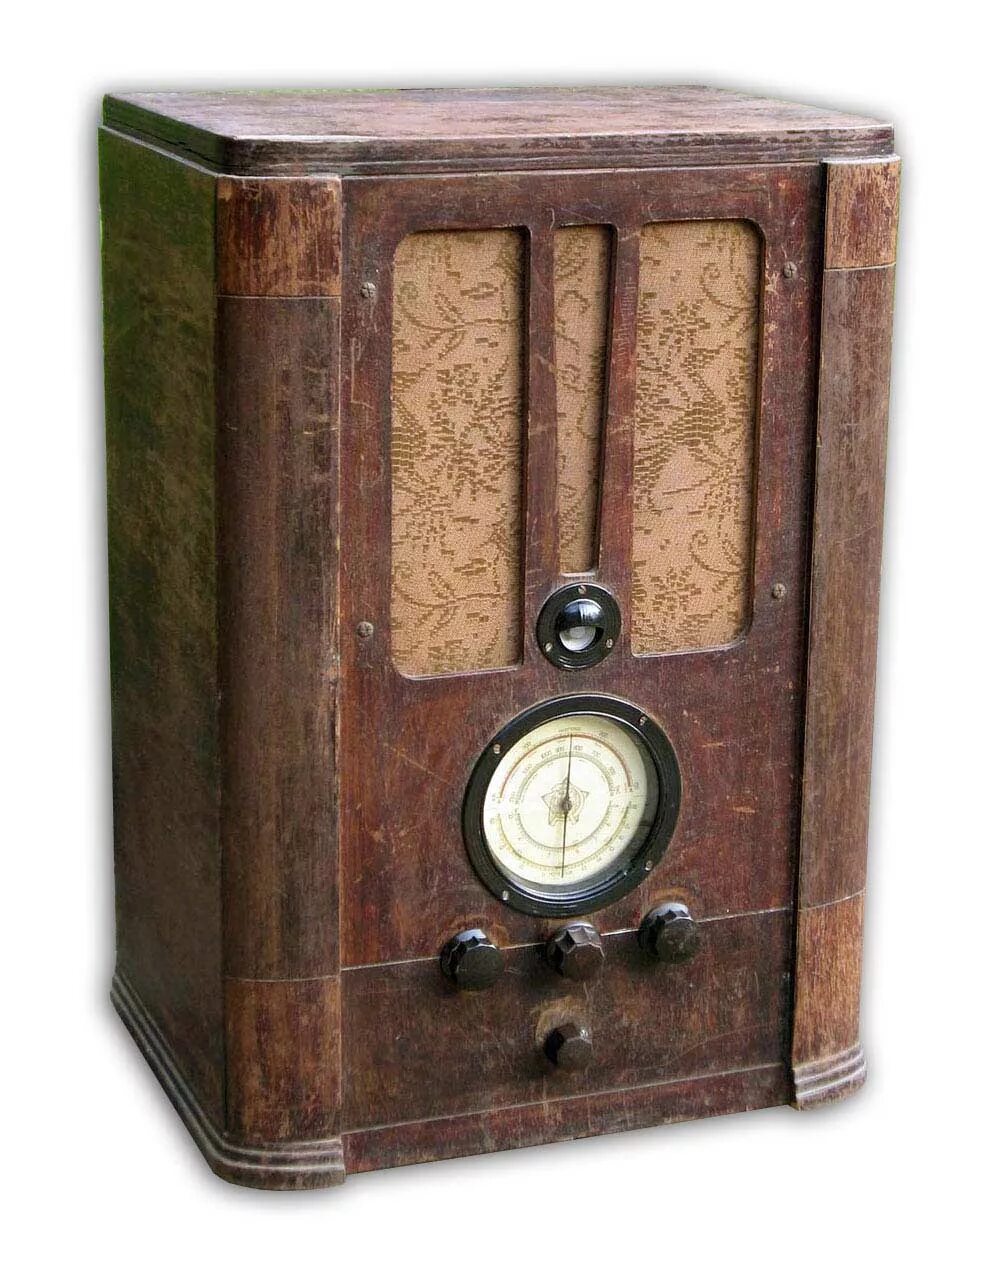 СВД-9 радиоприемник. Ламповый приемник СВД-9\. СВД-1 радиоприемник. Радиоприемник СВД-9 1940 года.